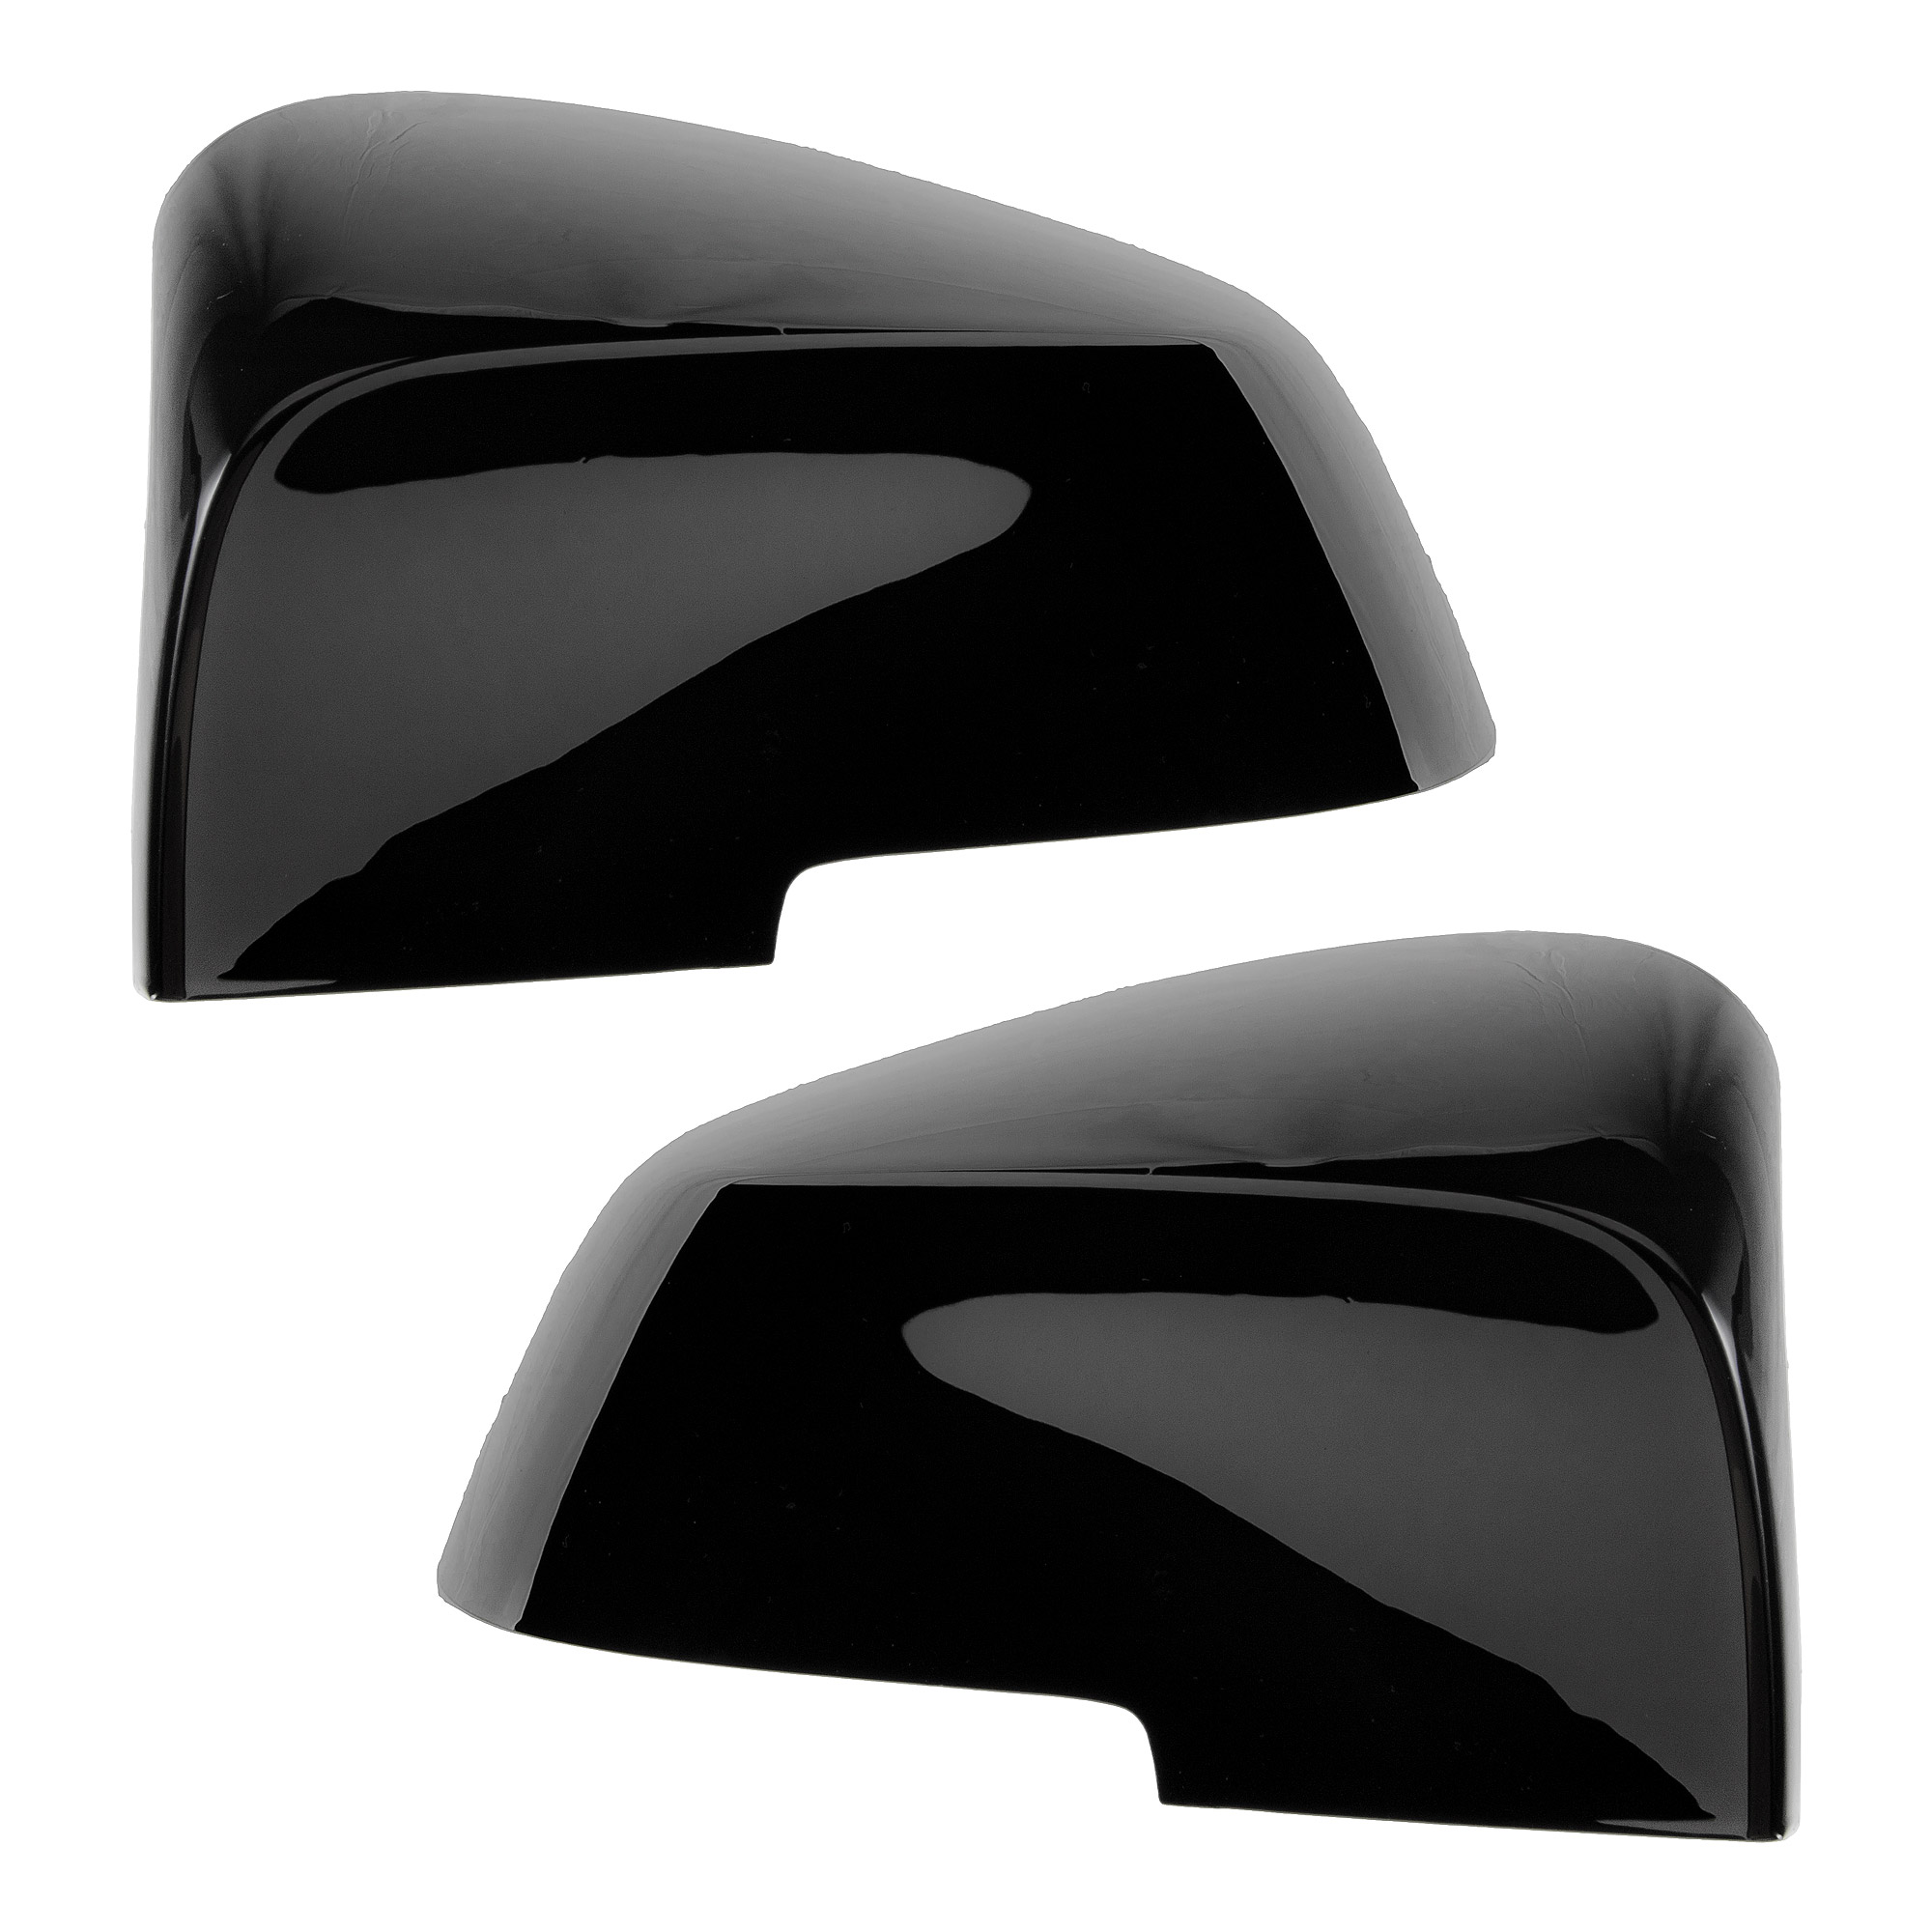 Für BMW 3 Serie F30 F31 Limousine & Touring 2012-up Ersetzen die  original-auto spiegel abdeckung M4 aussehen helle schwarz spiegel abdeckung  - AliExpress